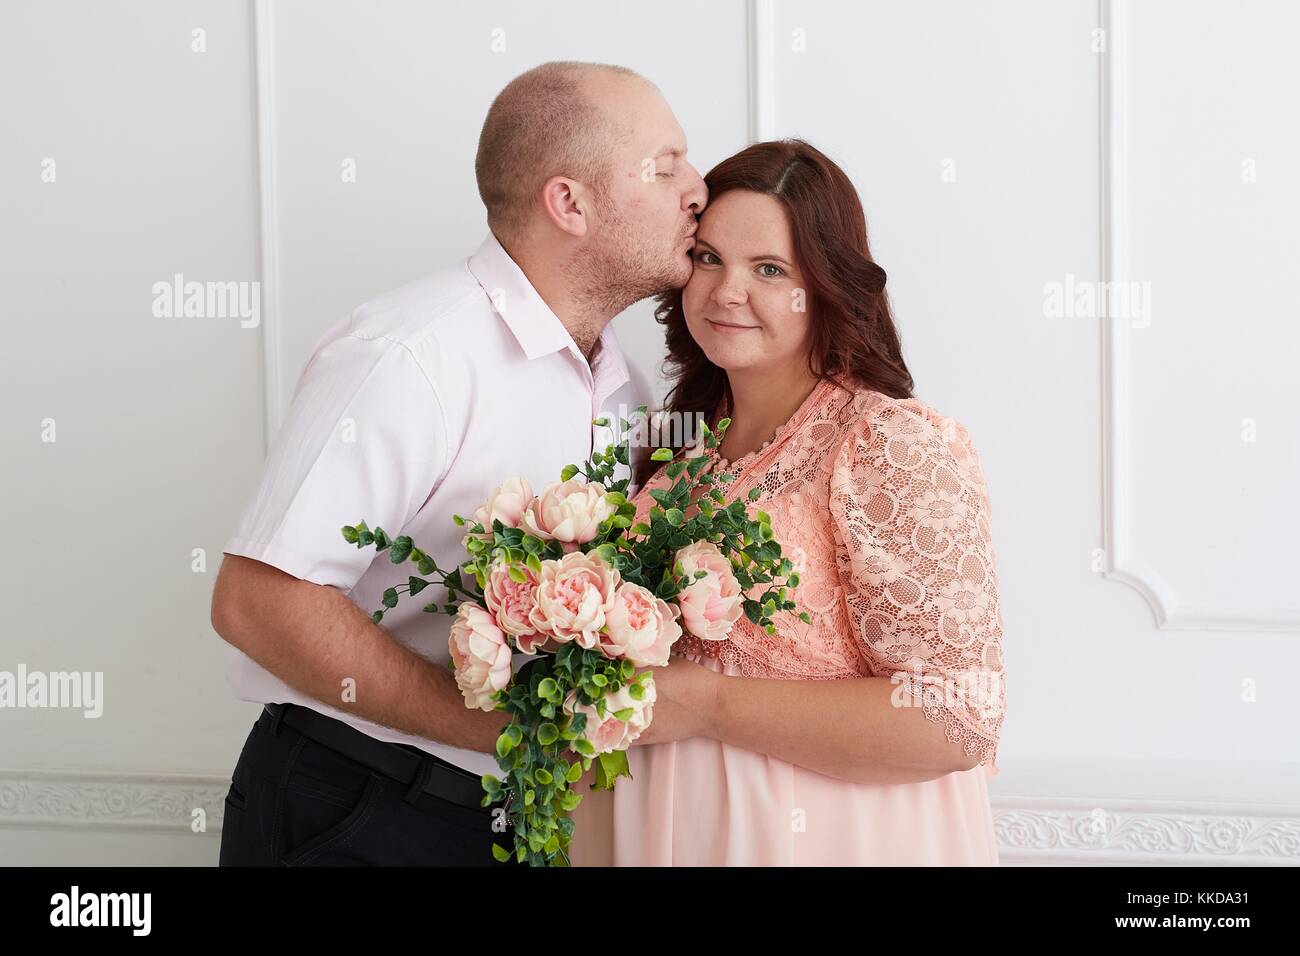 Mann küssen Lächeln schwangere Frau in Coral Kleid, die Bouquet Rose und Pfingstrose. Gerne küssen paar auf Luxus weiße Wand. Stockfoto